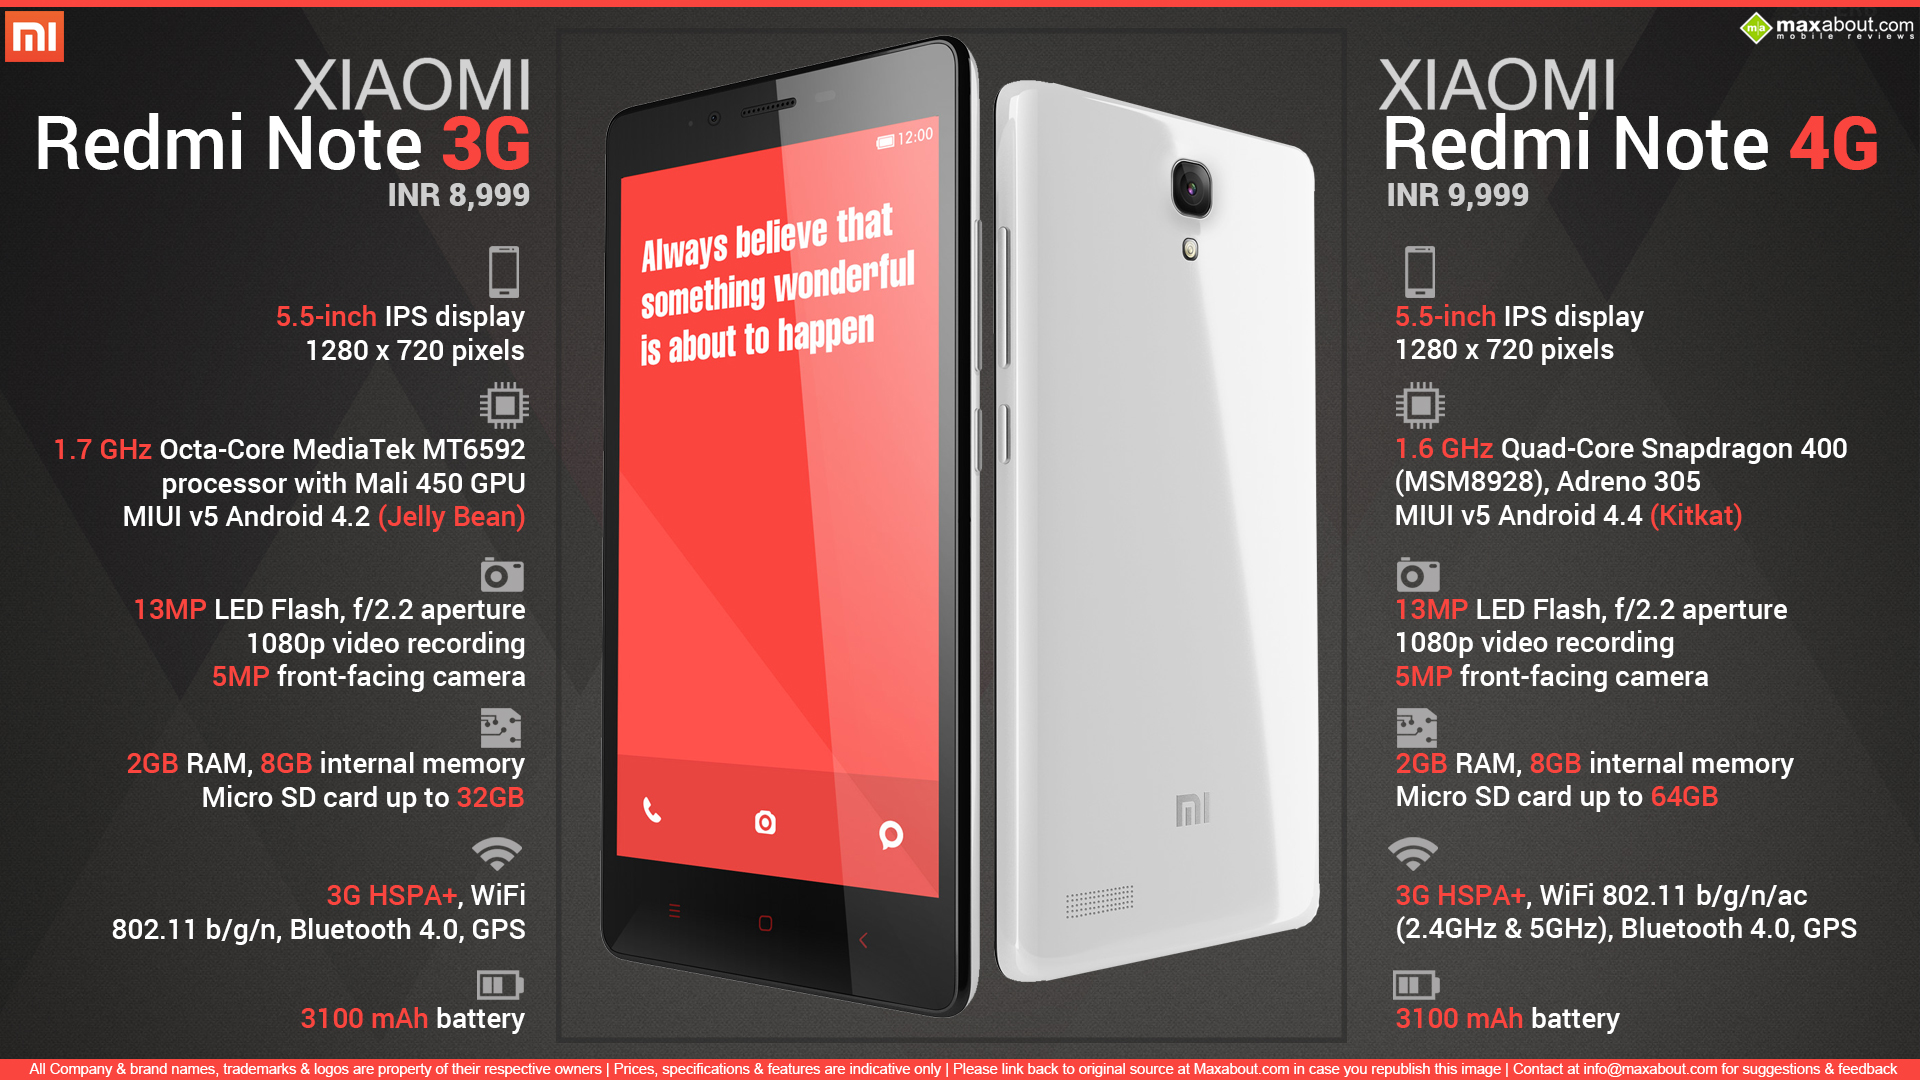 Xiaomi Redmi Note 4 Процессор